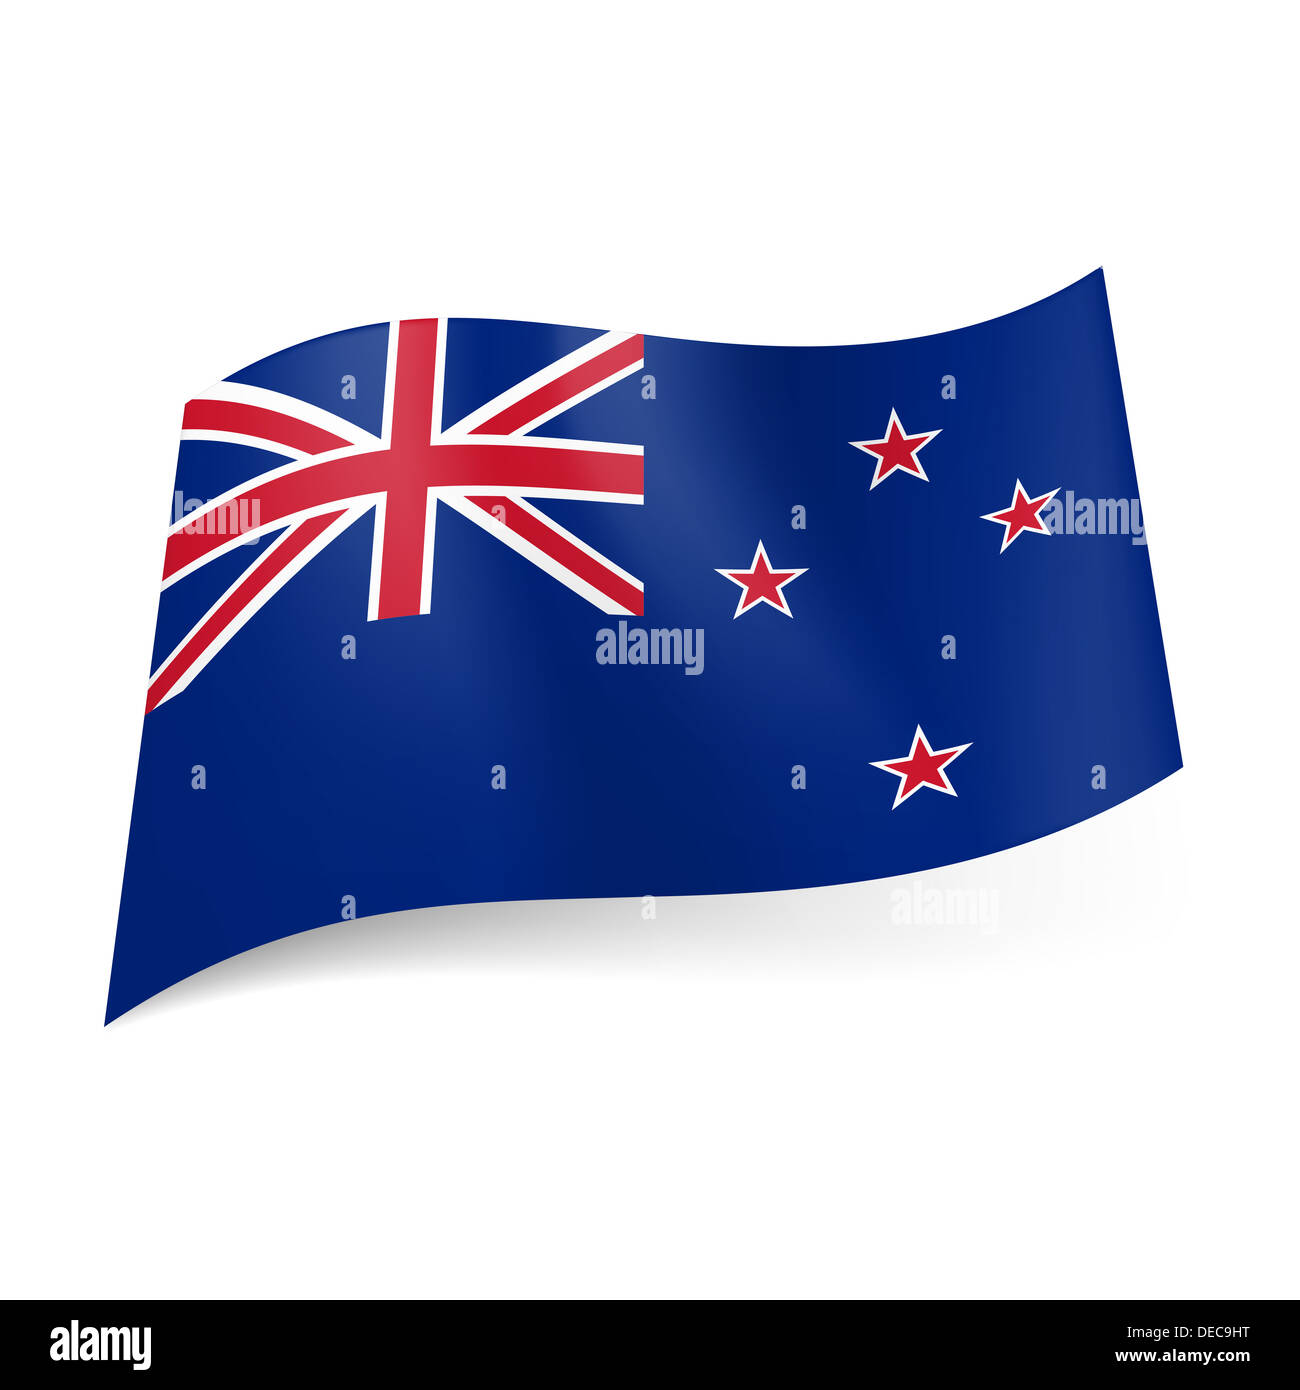 Những nhành lá tre trắng, trên nền xanh đặc trưng của cờ nước New Zealand sẽ mang đến cho bạn một cảm giác thư giãn và tĩnh lặng. Những bức hình về quốc kỳ New Zealand sẽ giúp bạn khám phá vẻ đẹp tự nhiên và sự đa dạng văn hóa của quốc gia này.